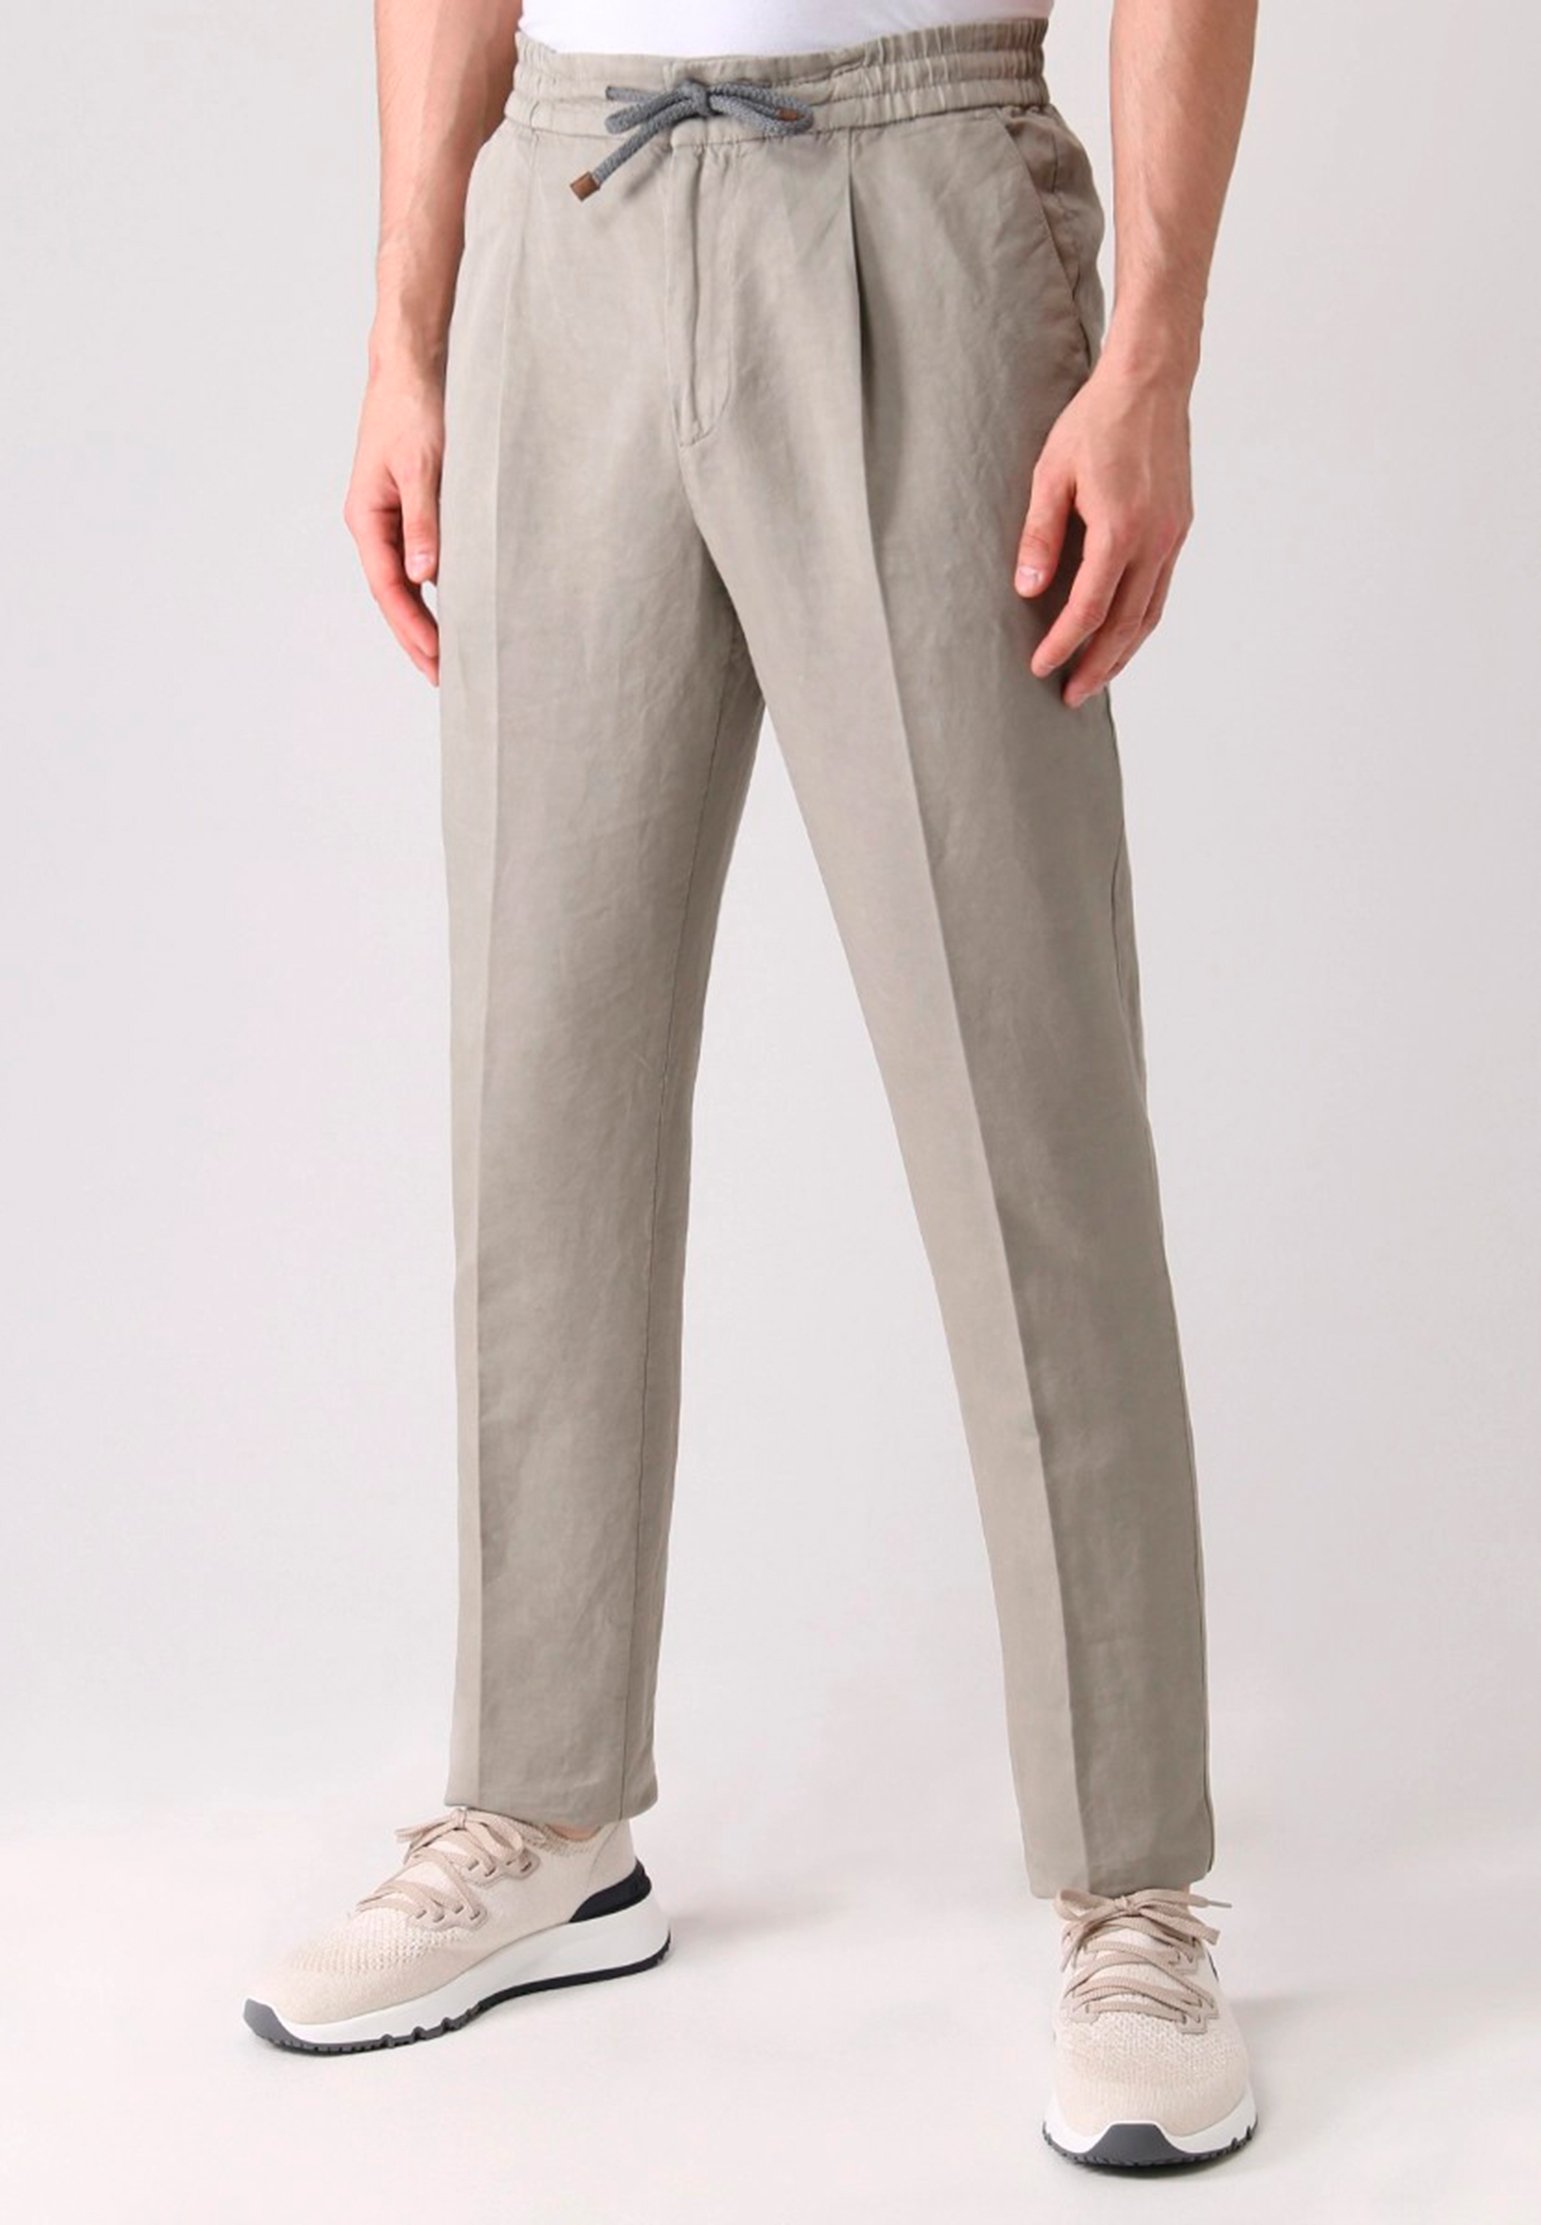 Pants BRUNELLO CUCINELLI Color: beige (Code: 423) in online store Allure